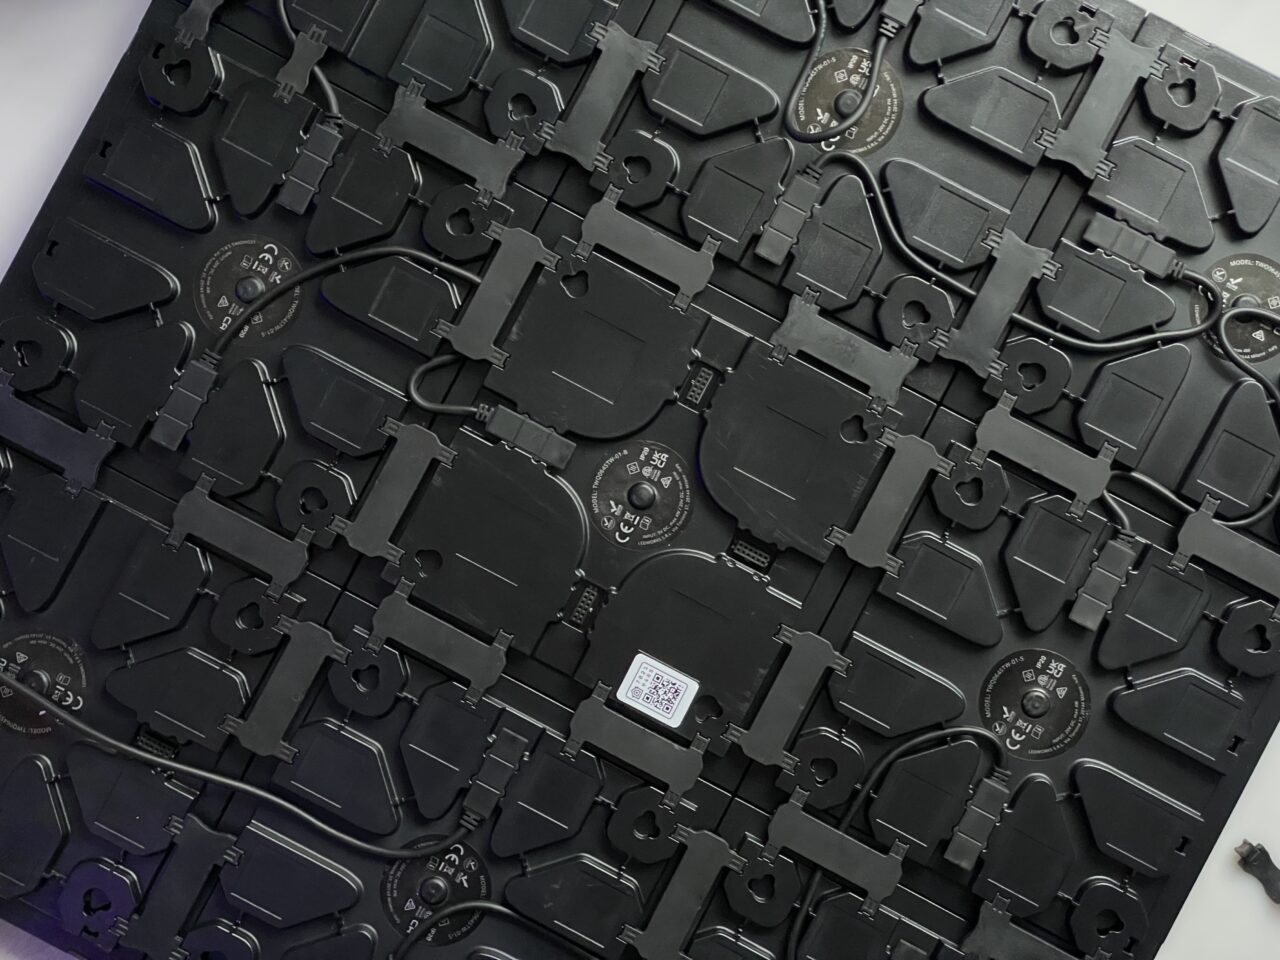 Części z czarnego plastiku różnych kształtów i rozmiarów, prawdopodobnie elektroniczne lub mechaniczne elementy, ułożone chaotycznie jeden na drugim.